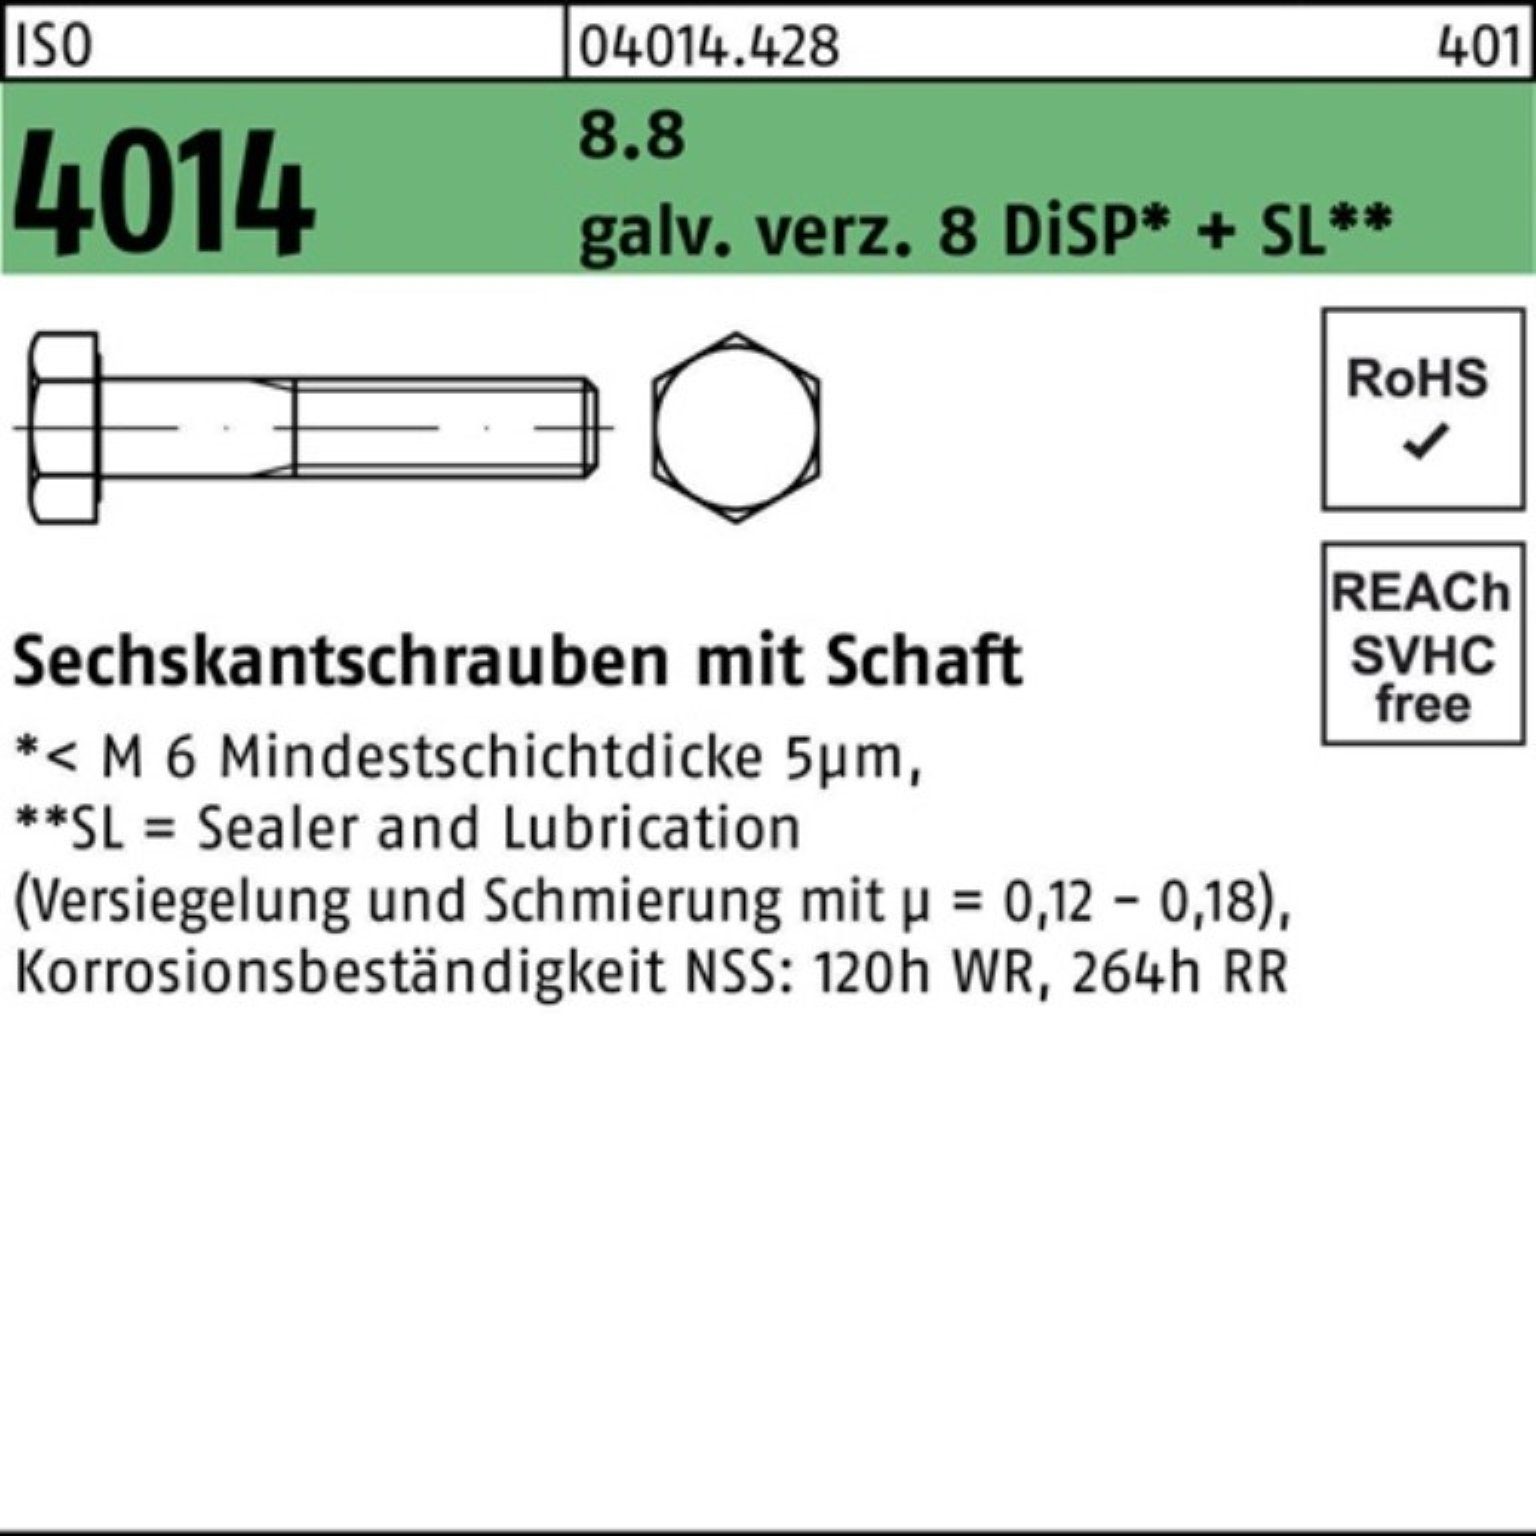 Bufab Sechskantschraube 100er Pack Sechskantschraube galv.verz. 4014 8 ISO M12x100 8.8 Schaft